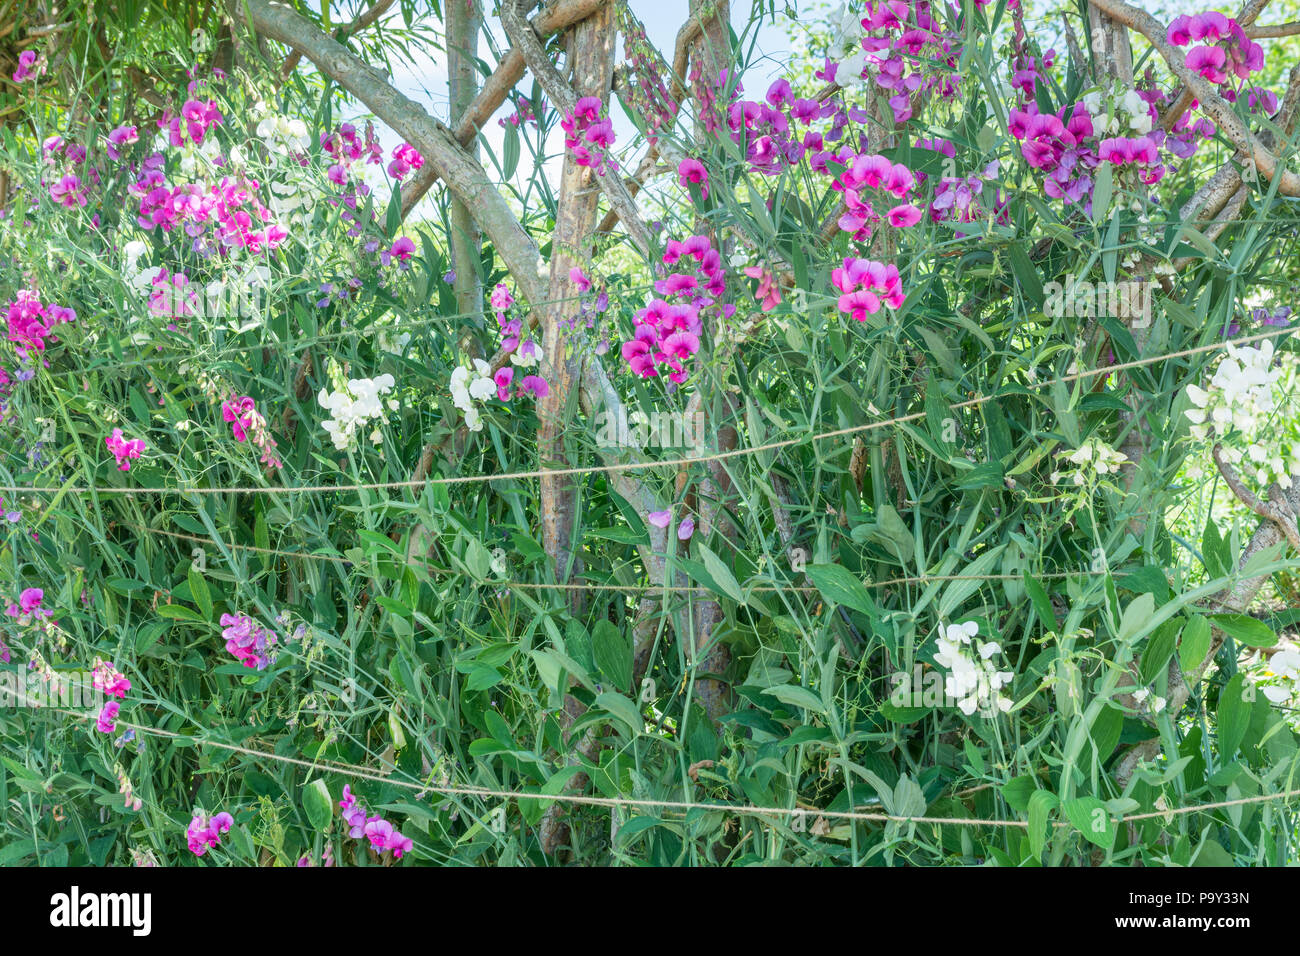 Lathyrus latifolius, perennial everlasting pea Stock Photo